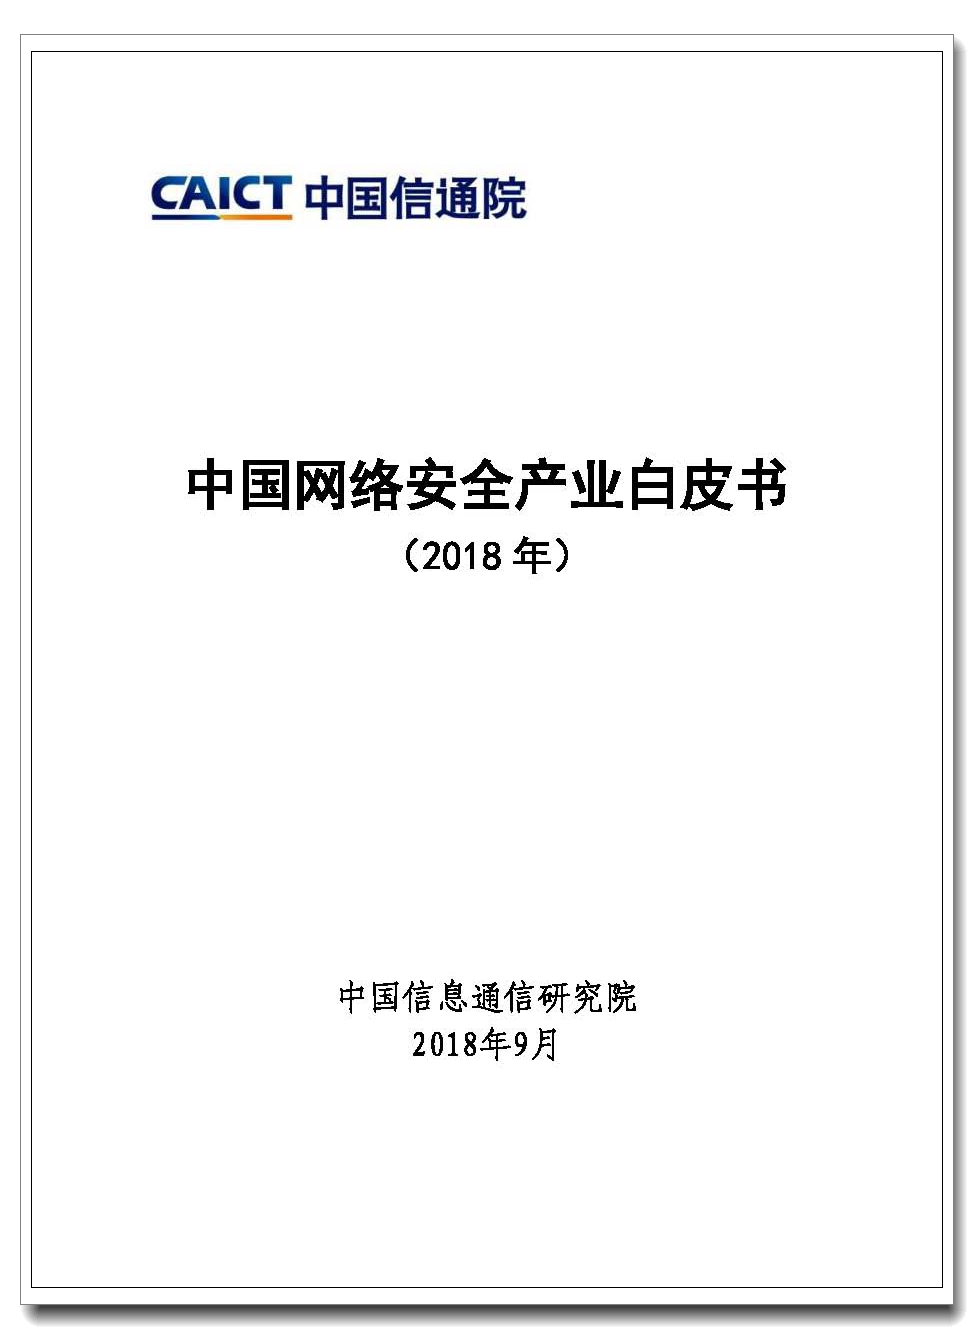 页面提取自－ 水印版—中国网络安全产业白皮书（2018）.jpg